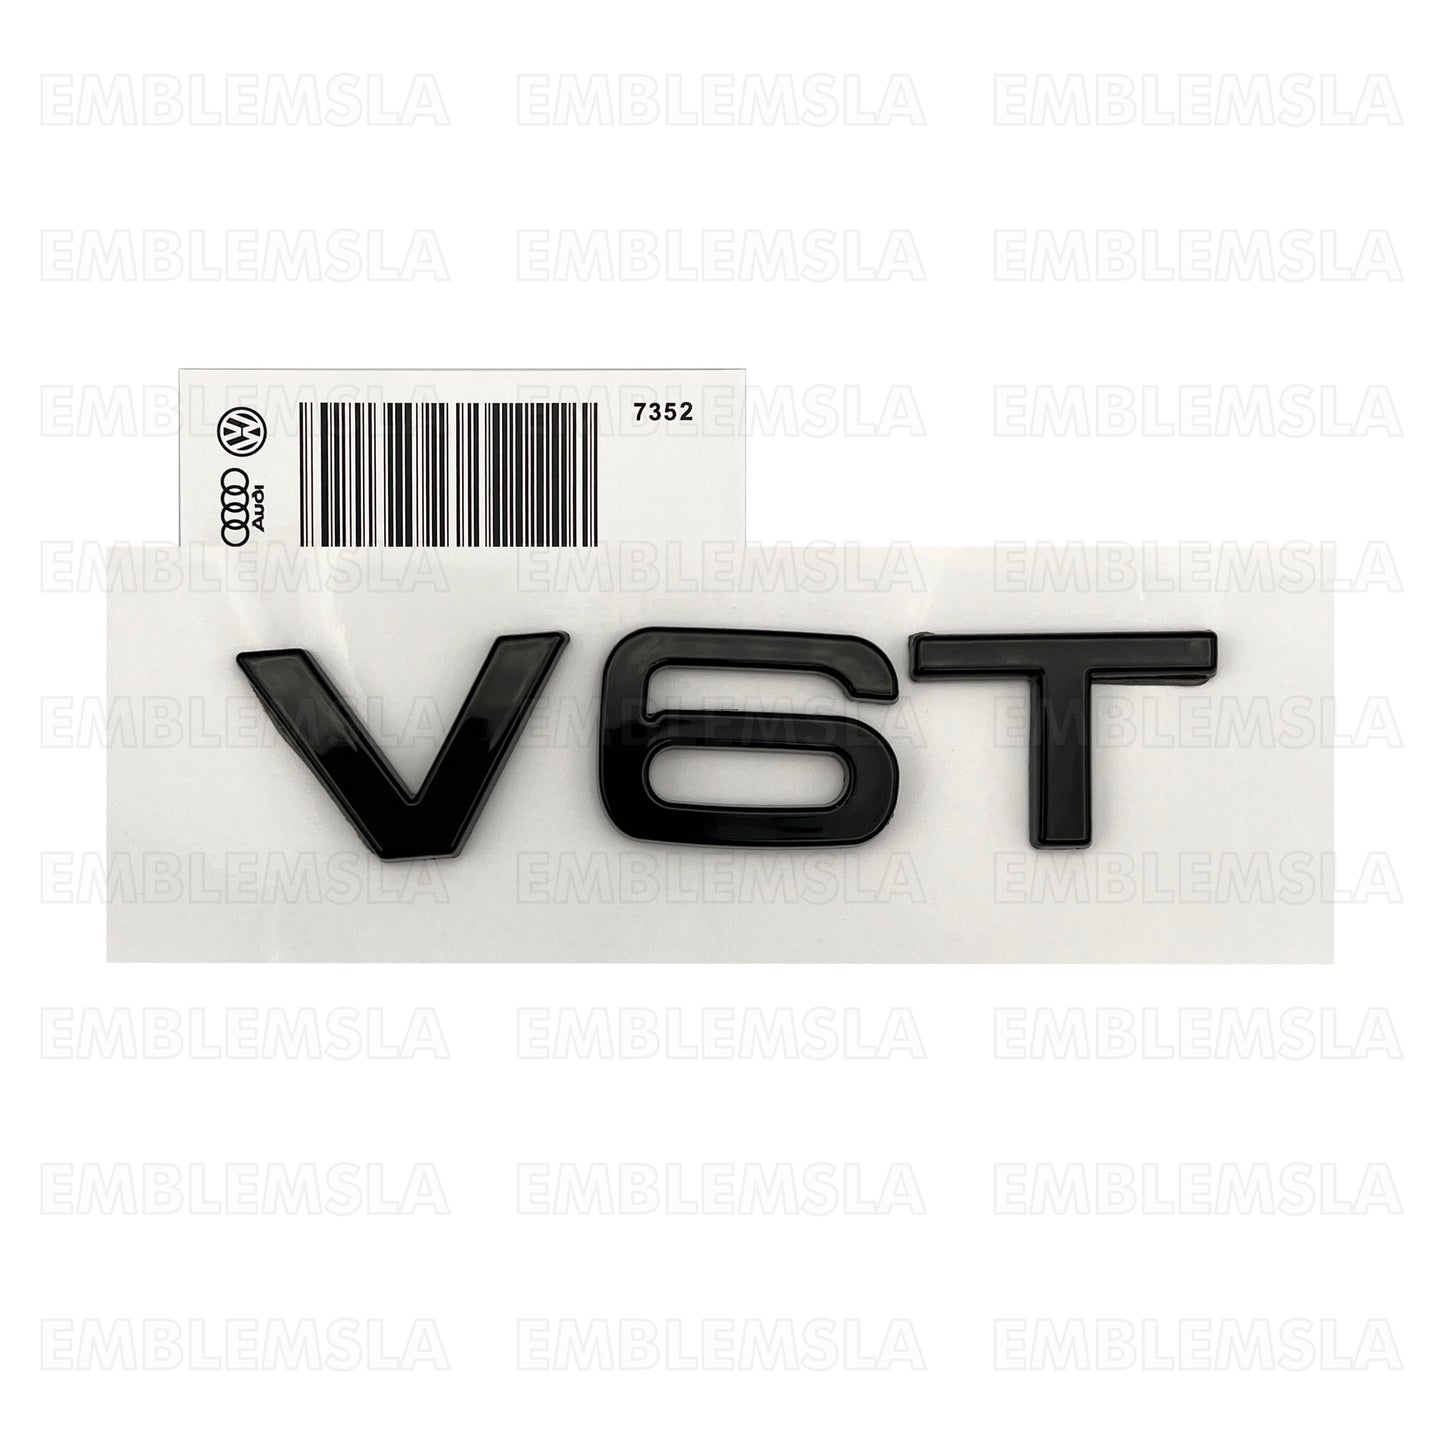 Audi V6T Emblem Gloss Black OEM Side Fender Badge A4 A5 A6 A7 S6 Q3 Q5 Q7 TT